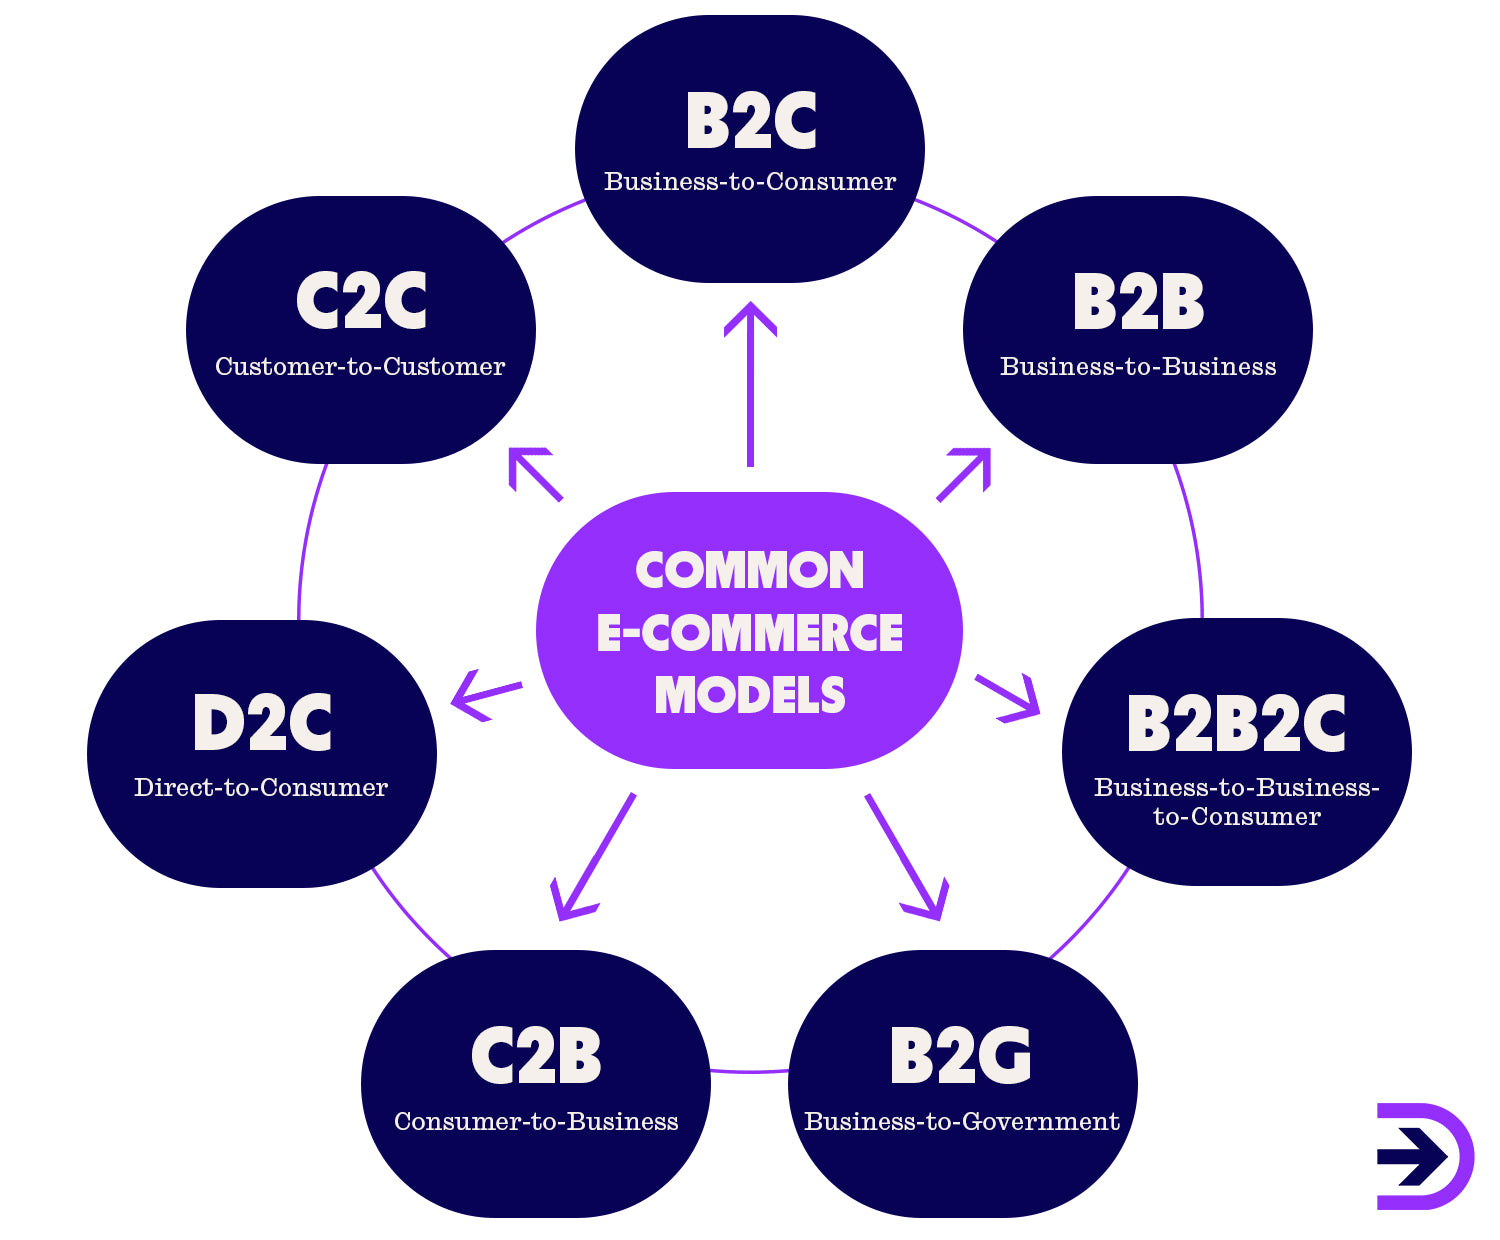 Some common e-commerce models include B2C, B2B, B2B2C, B2G, C2B, D2C and C2C. 